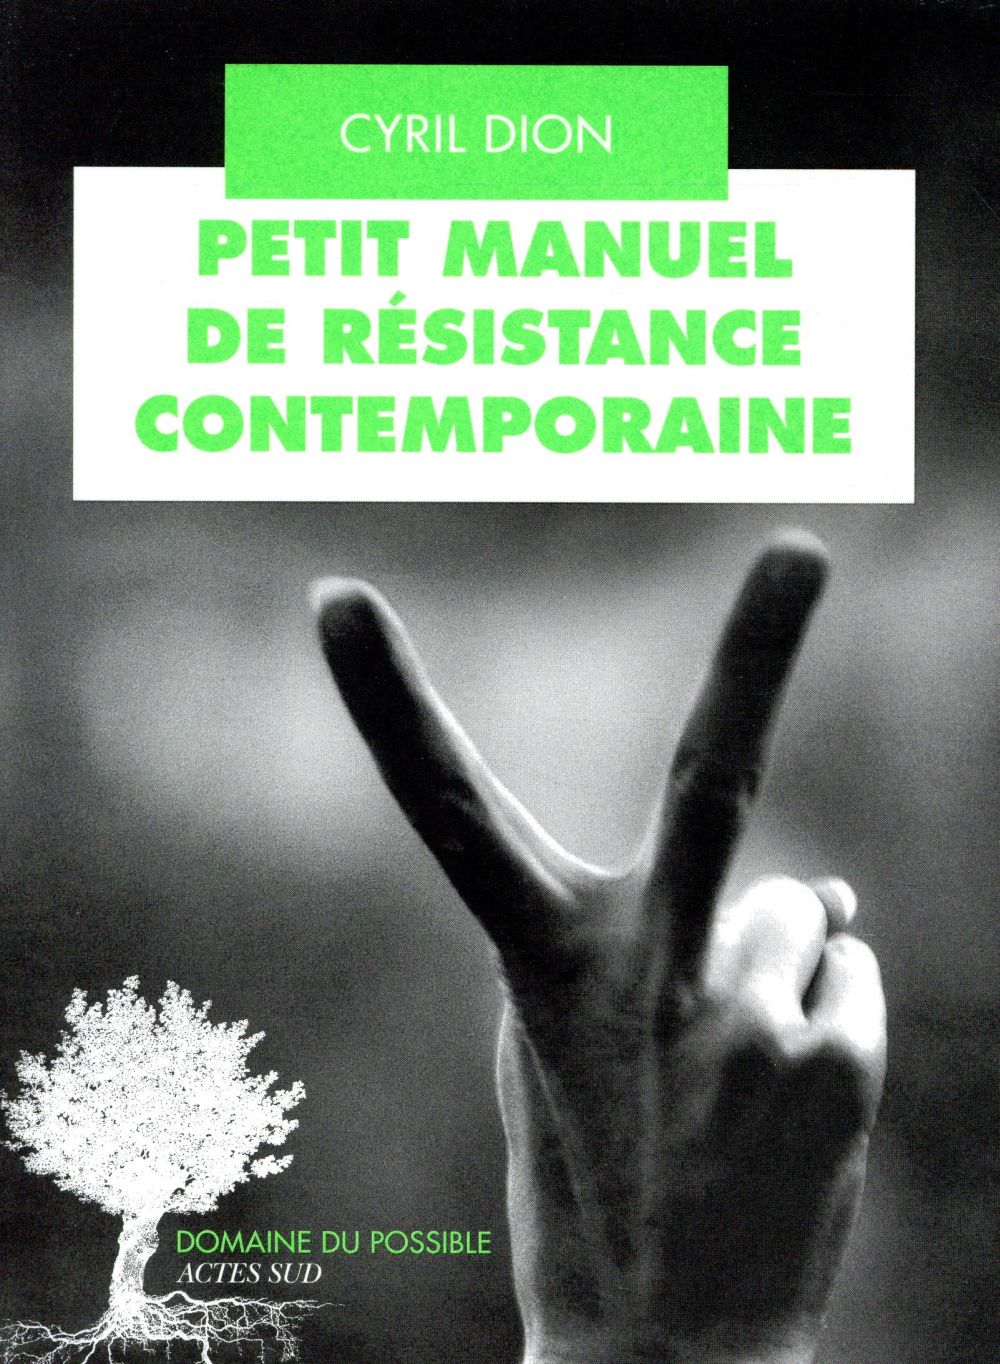 PETIT MANUEL DE RESISTANCE CONTEMPORAINE